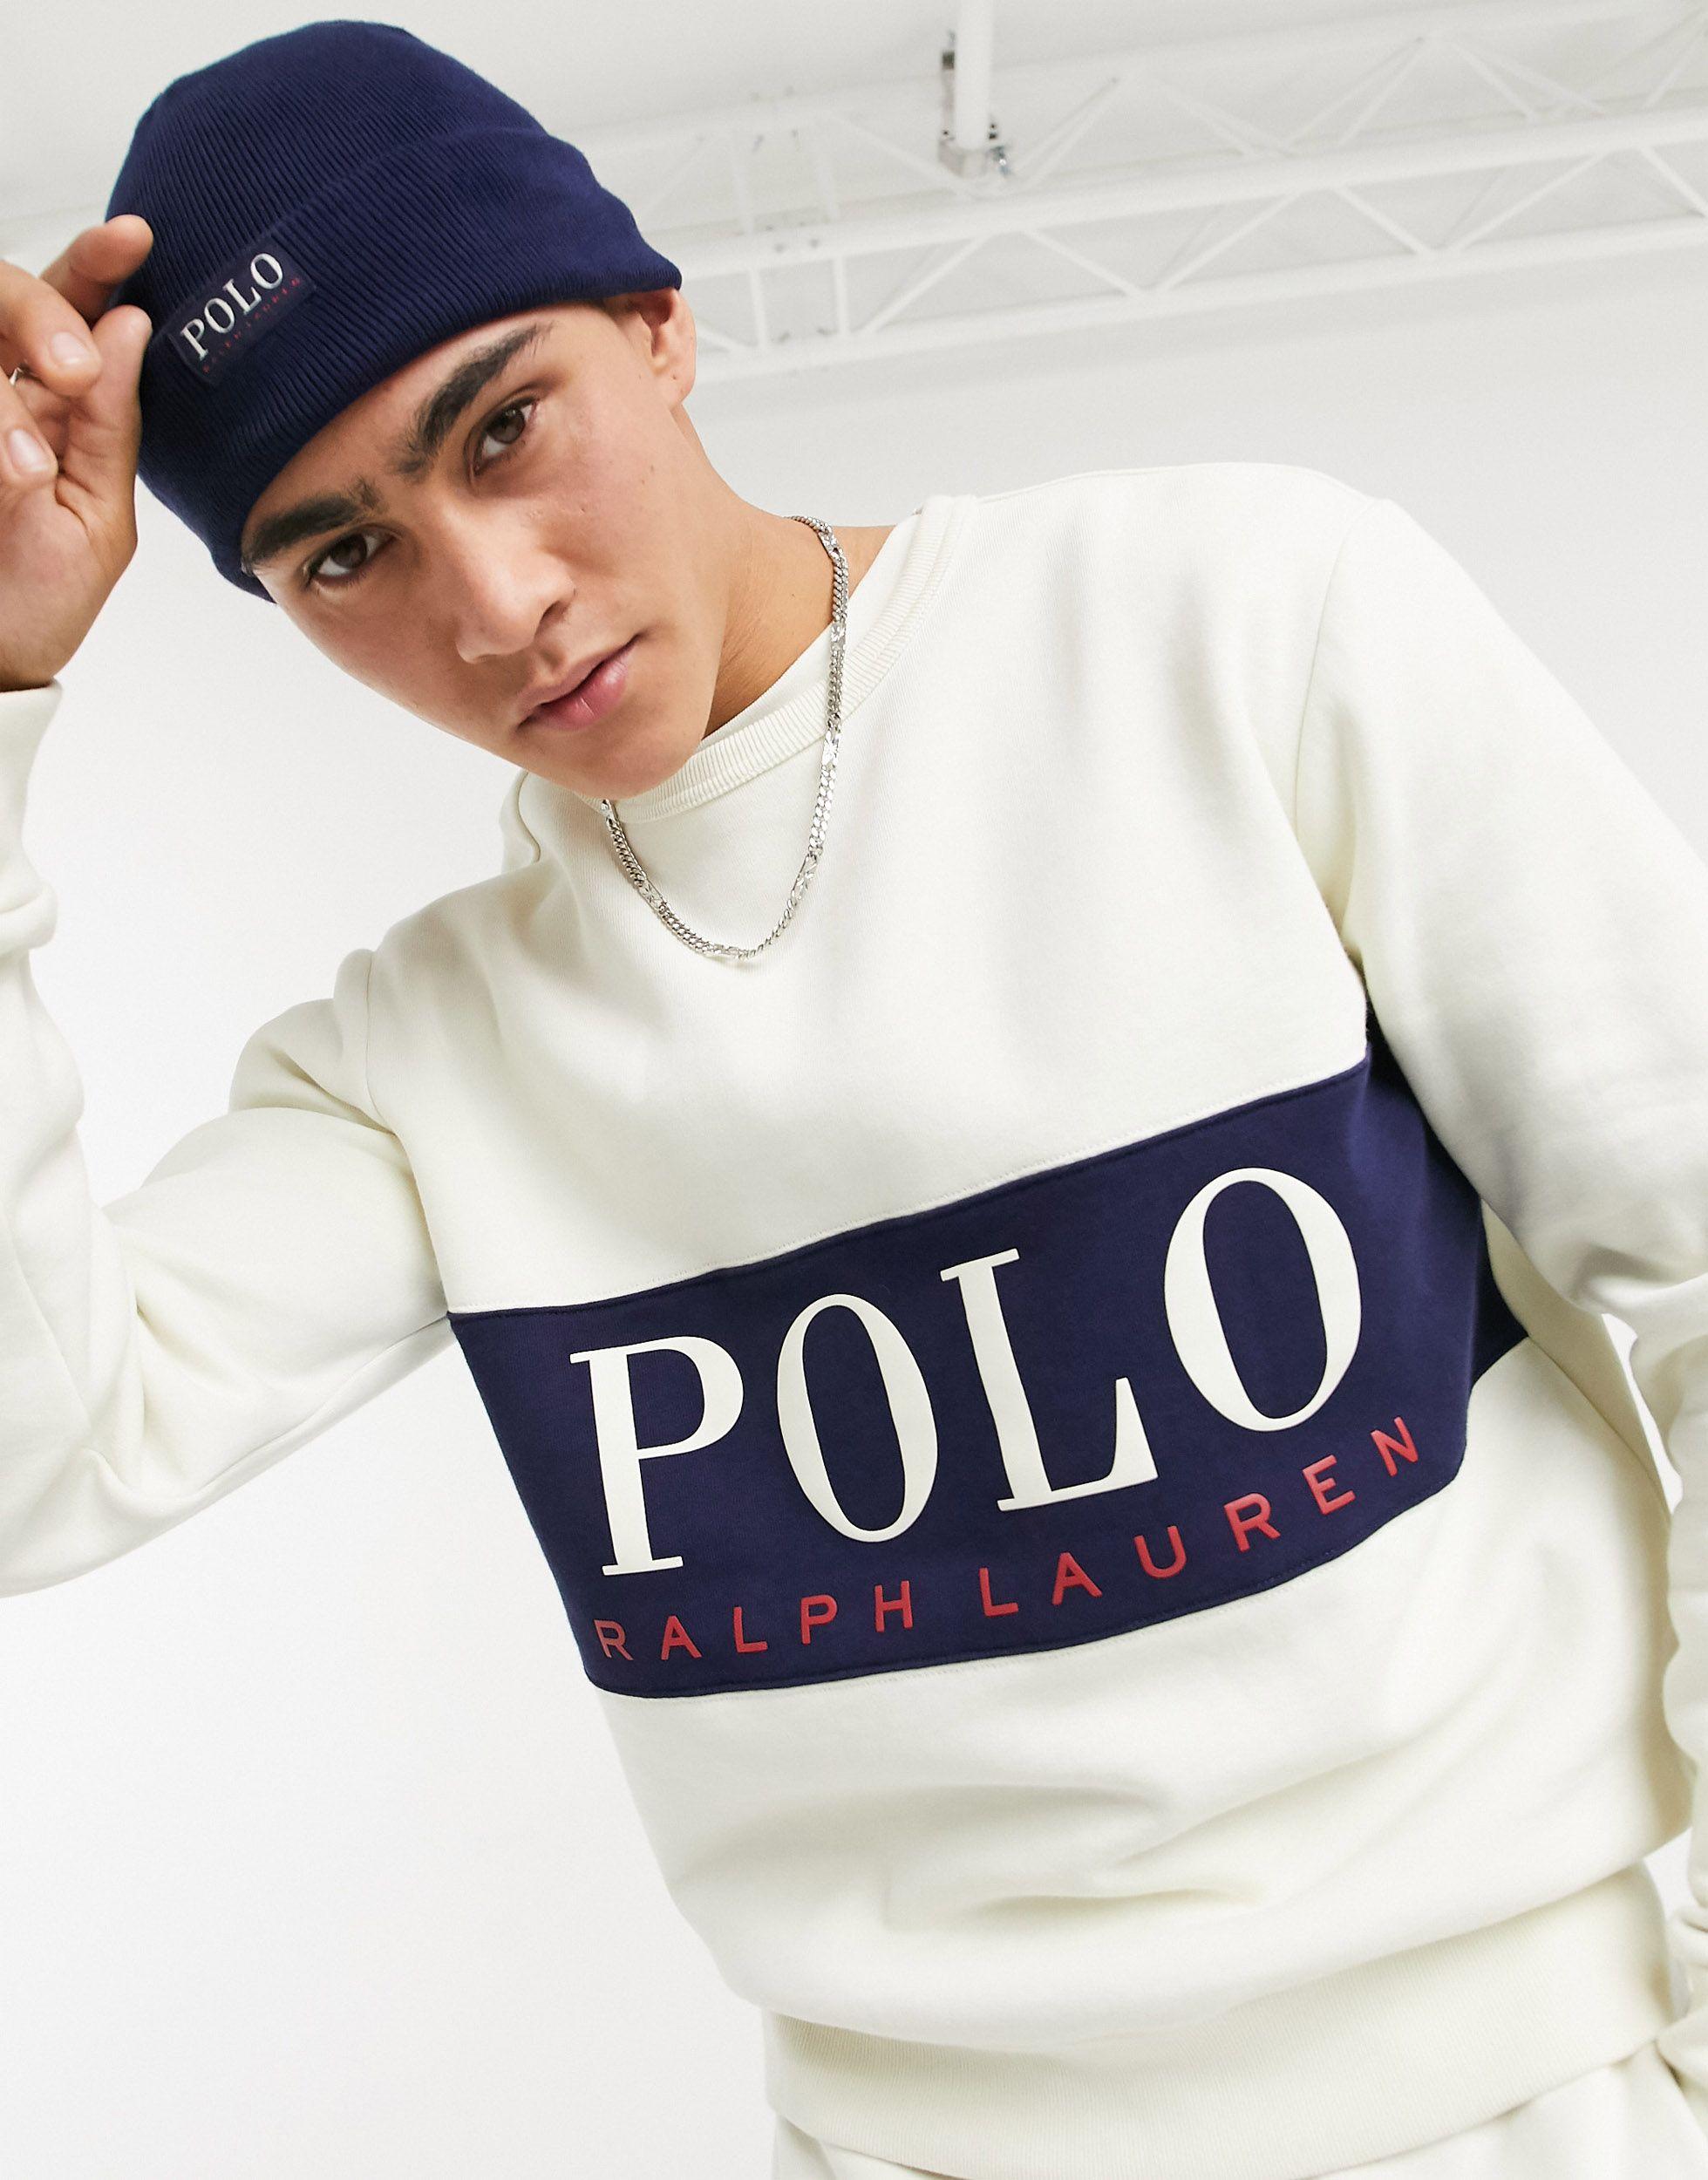 Polo Ralph Lauren X Asos Exclusive Collab Sweatshirt for Men | Lyst